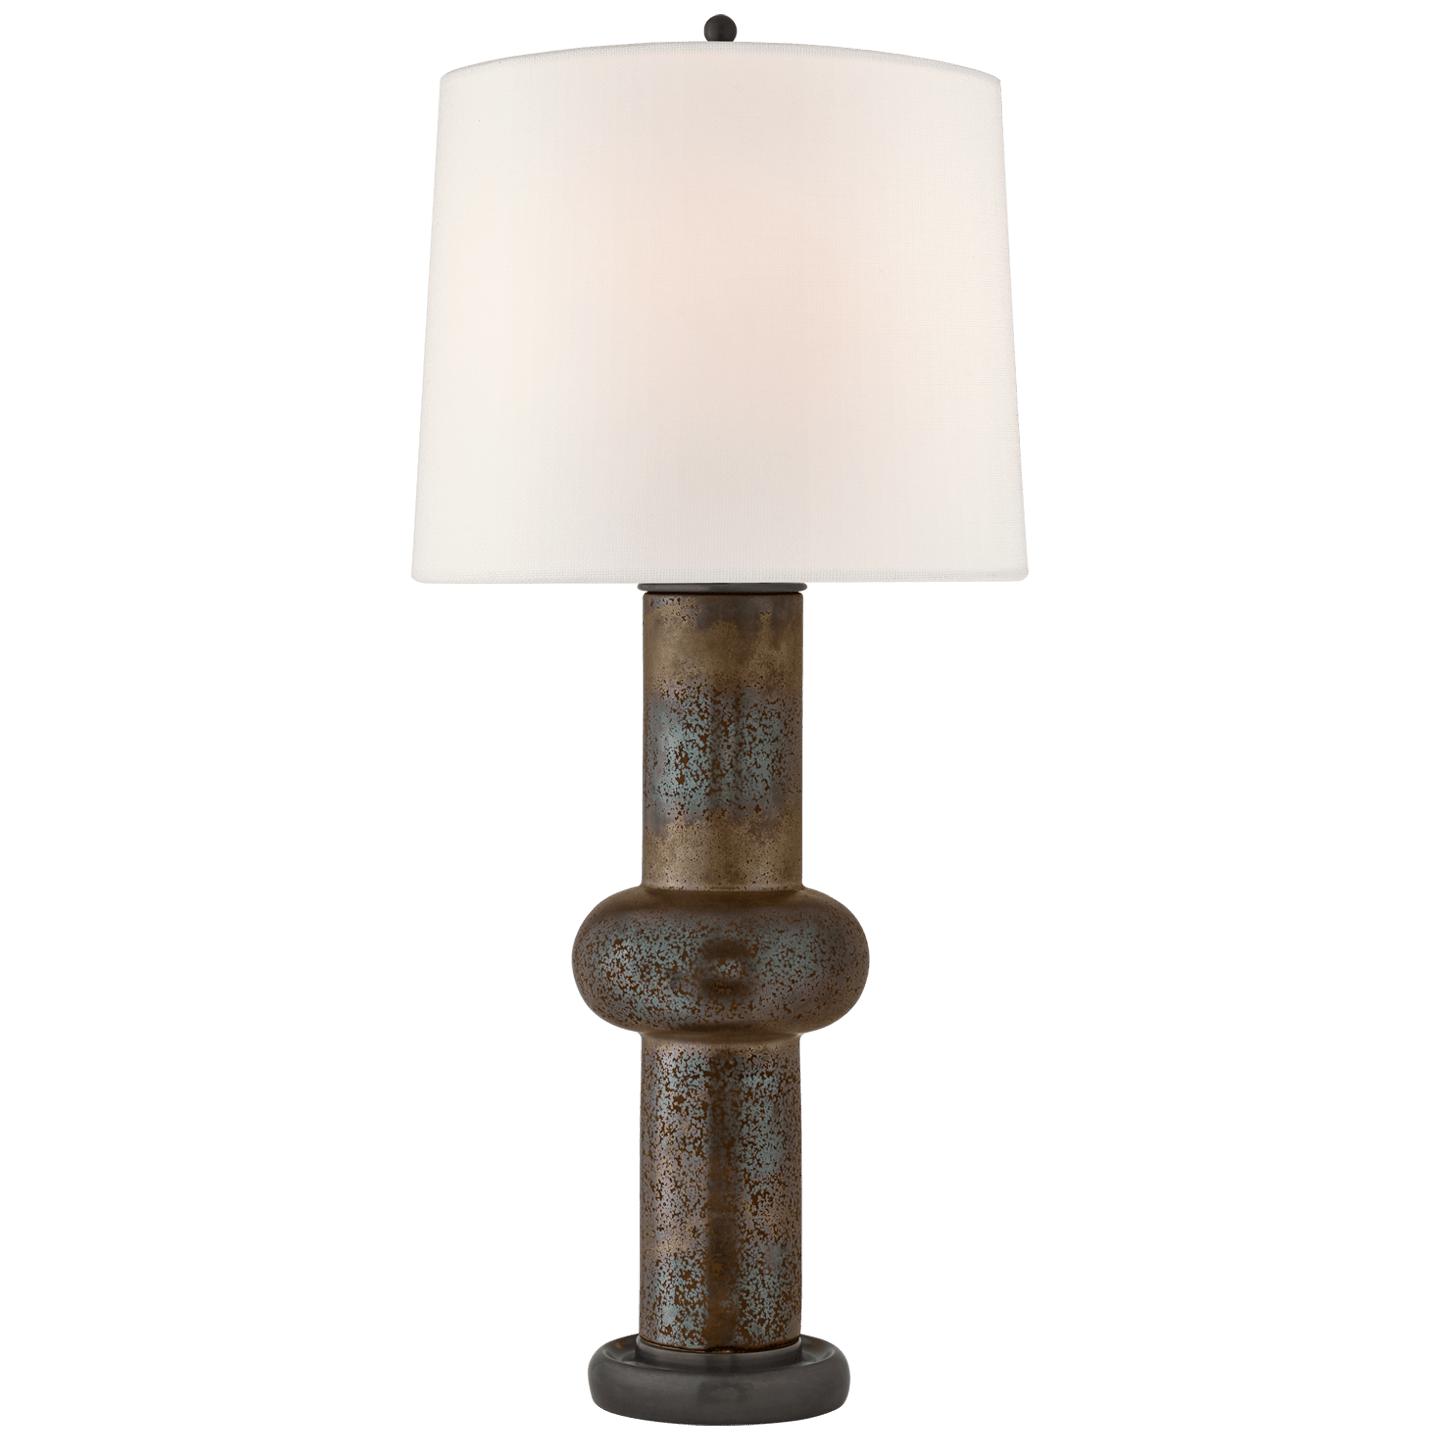 Купить Настольная лампа Bibi Large Table Lamp в интернет-магазине roooms.ru